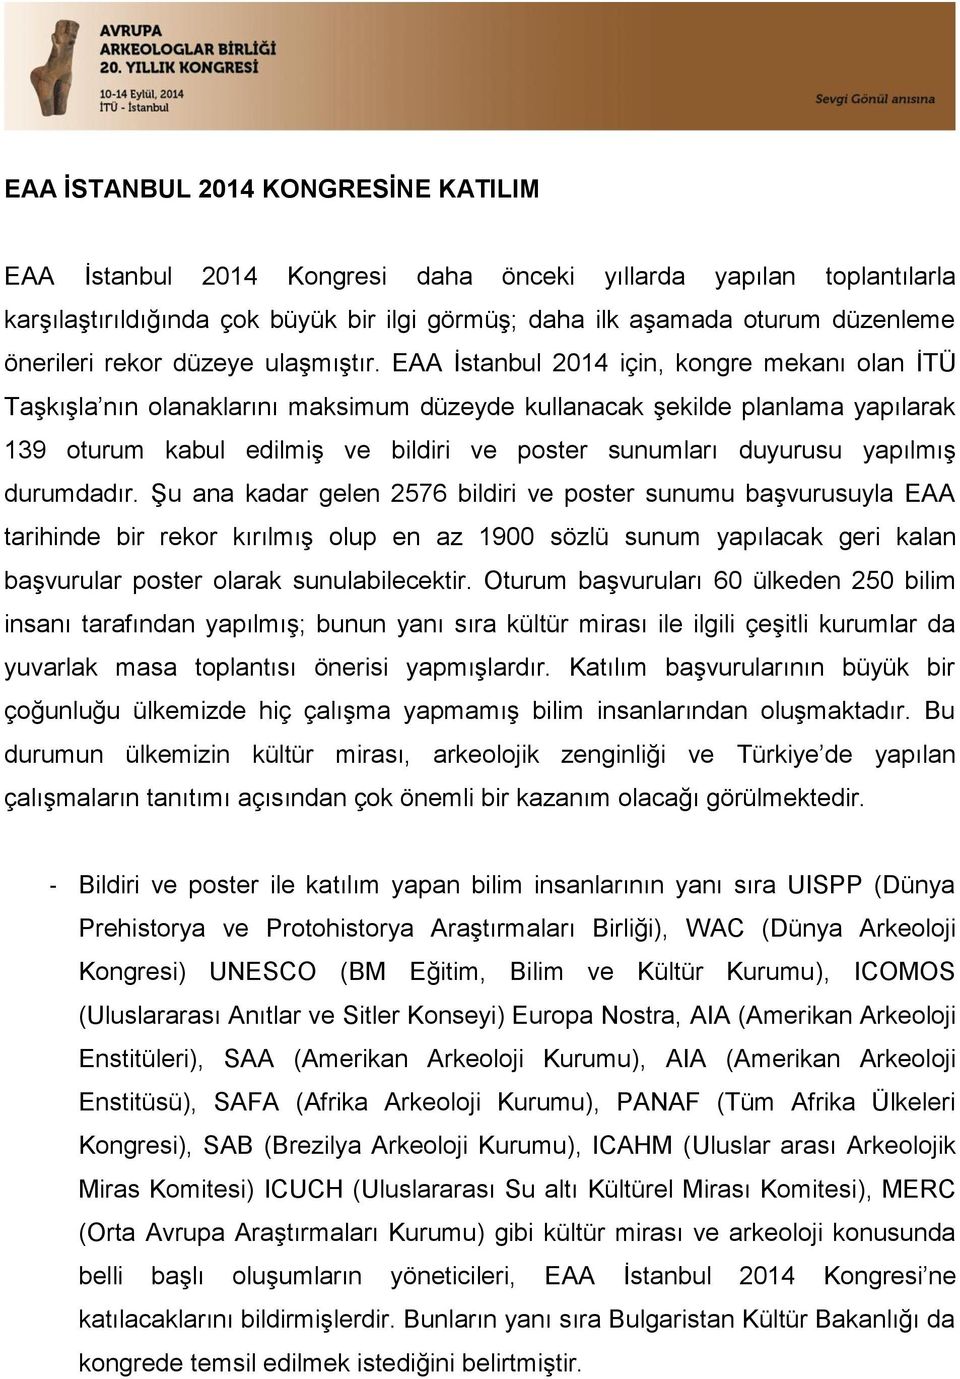 EAA İstanbul 2014 için, kongre mekanı olan İTÜ Taşkışla nın olanaklarını maksimum düzeyde kullanacak şekilde planlama yapılarak 139 oturum kabul edilmiş ve bildiri ve poster sunumları duyurusu